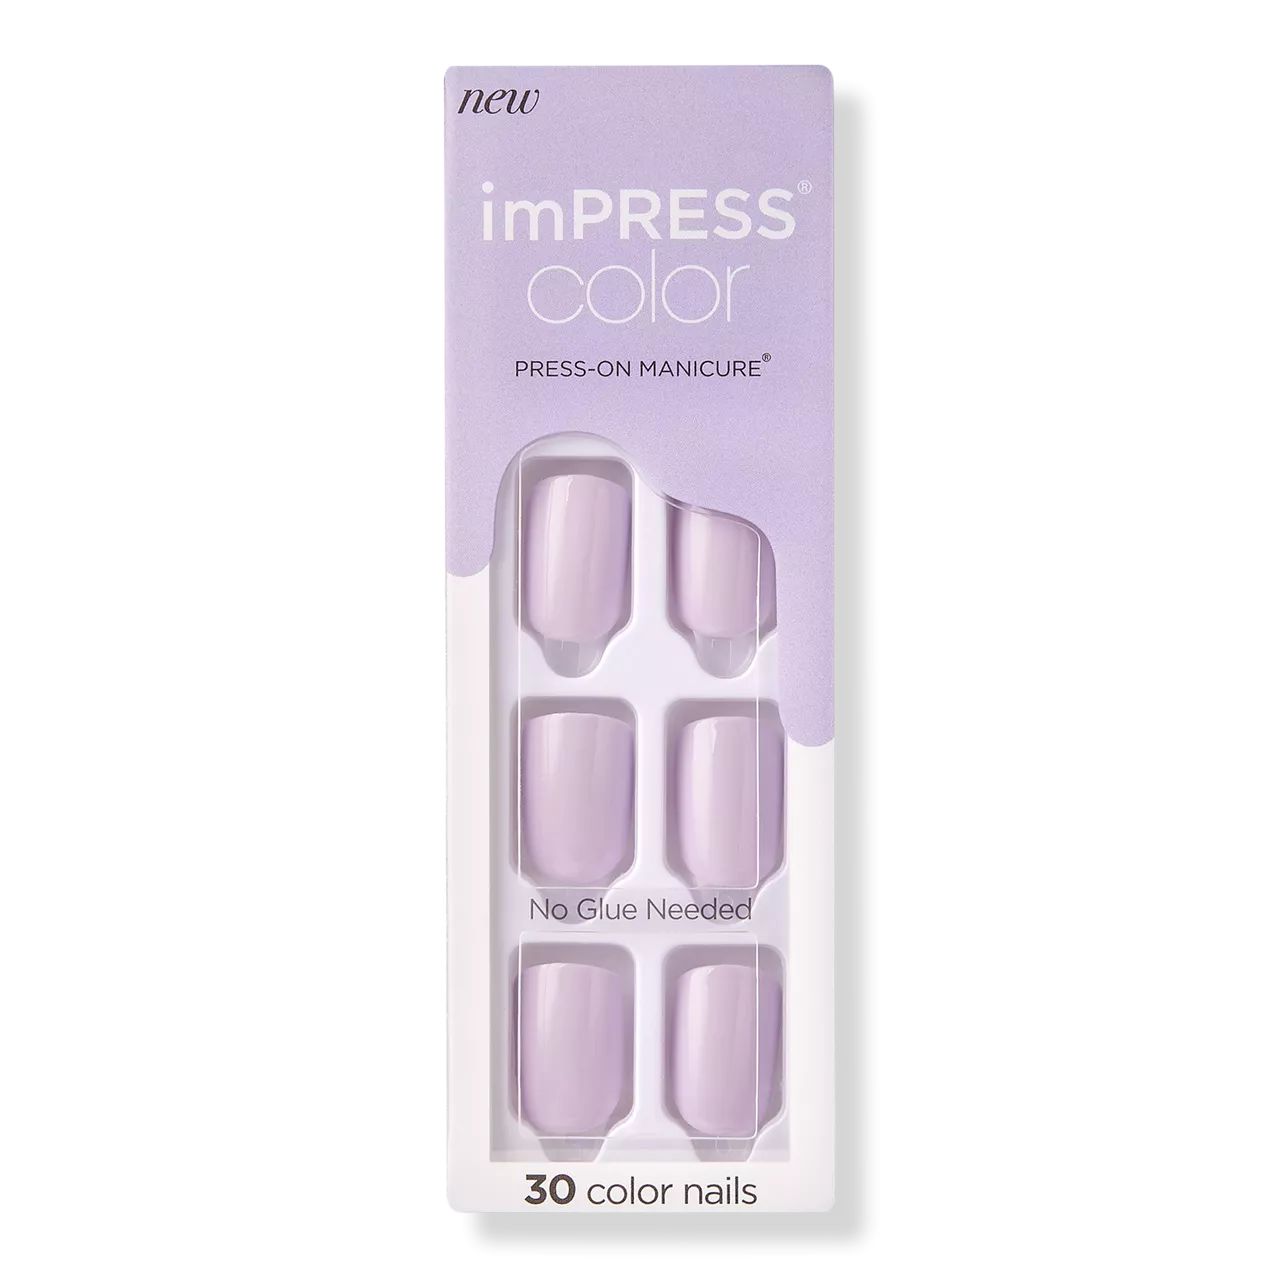 Picture Purplect imPRESS Color Press-On Manicure | Ulta